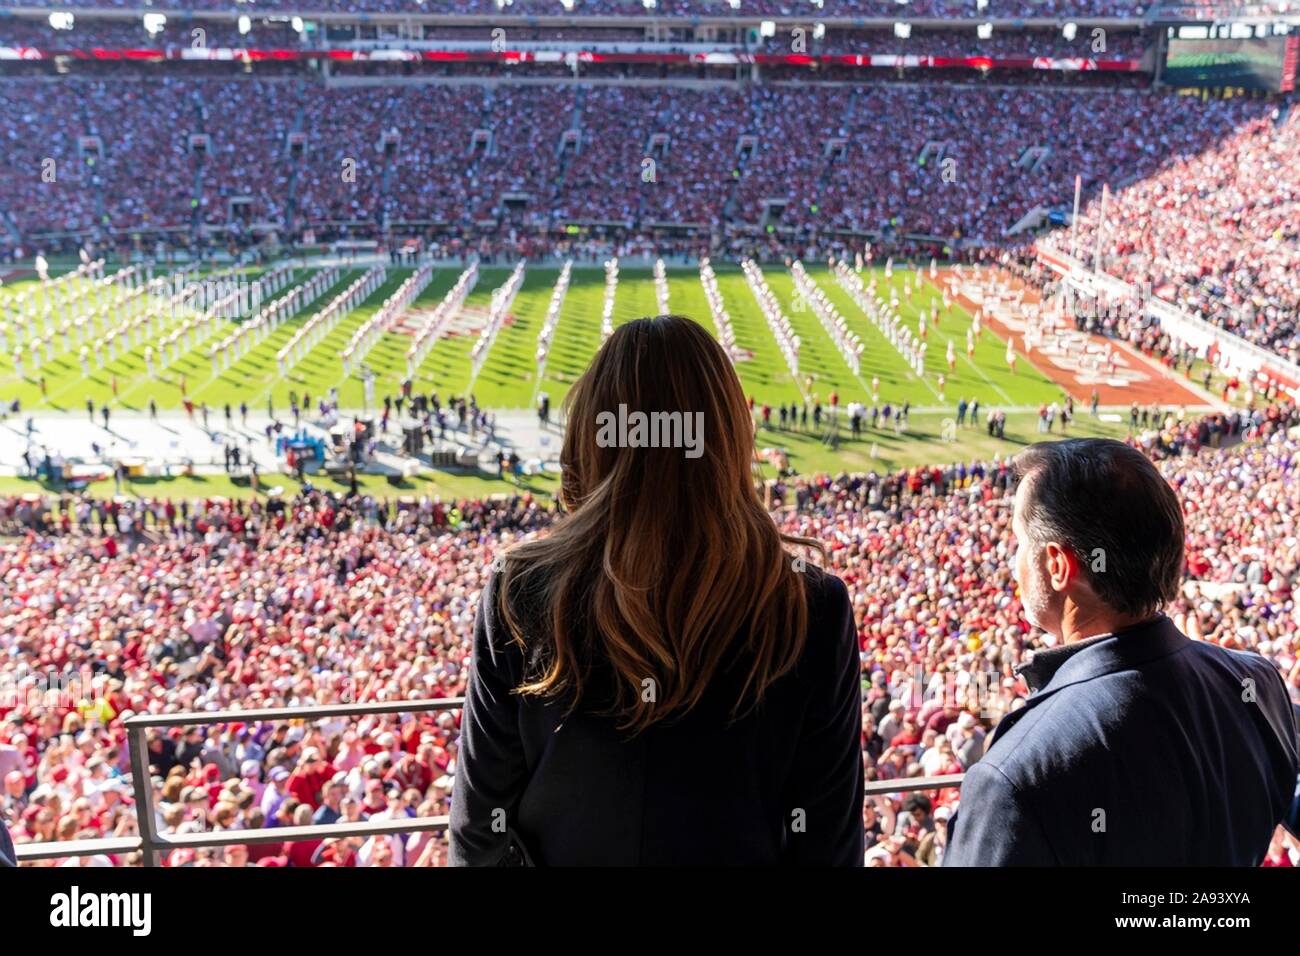 U.S prima signora Melania Trump orologi University of Alabama vs Università dello stato della Louisiana del gioco del calcio presso lo Stadio Bryant-Denny Novembre 9, 2019 in Tuscaloosa, Alabama. Foto Stock